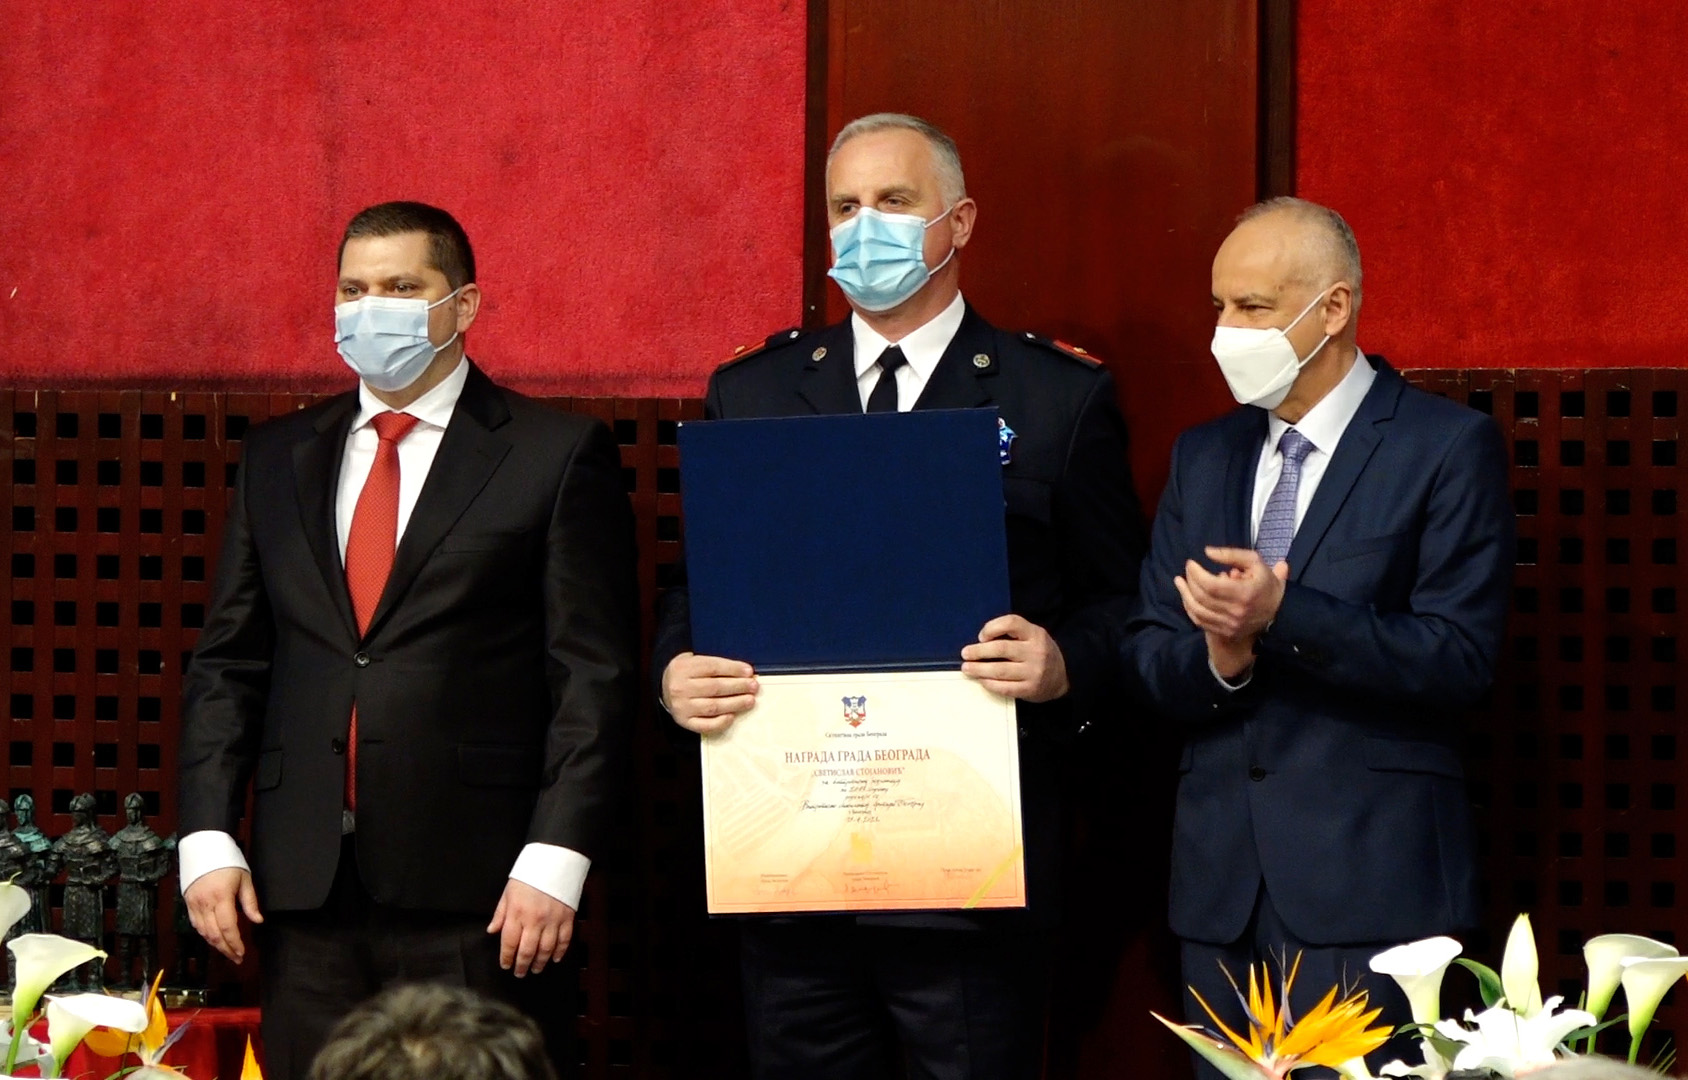 Pripadnicima MUP-a uručene nagrade Grada Beograda za hrabrost i požrtvovanost u radu